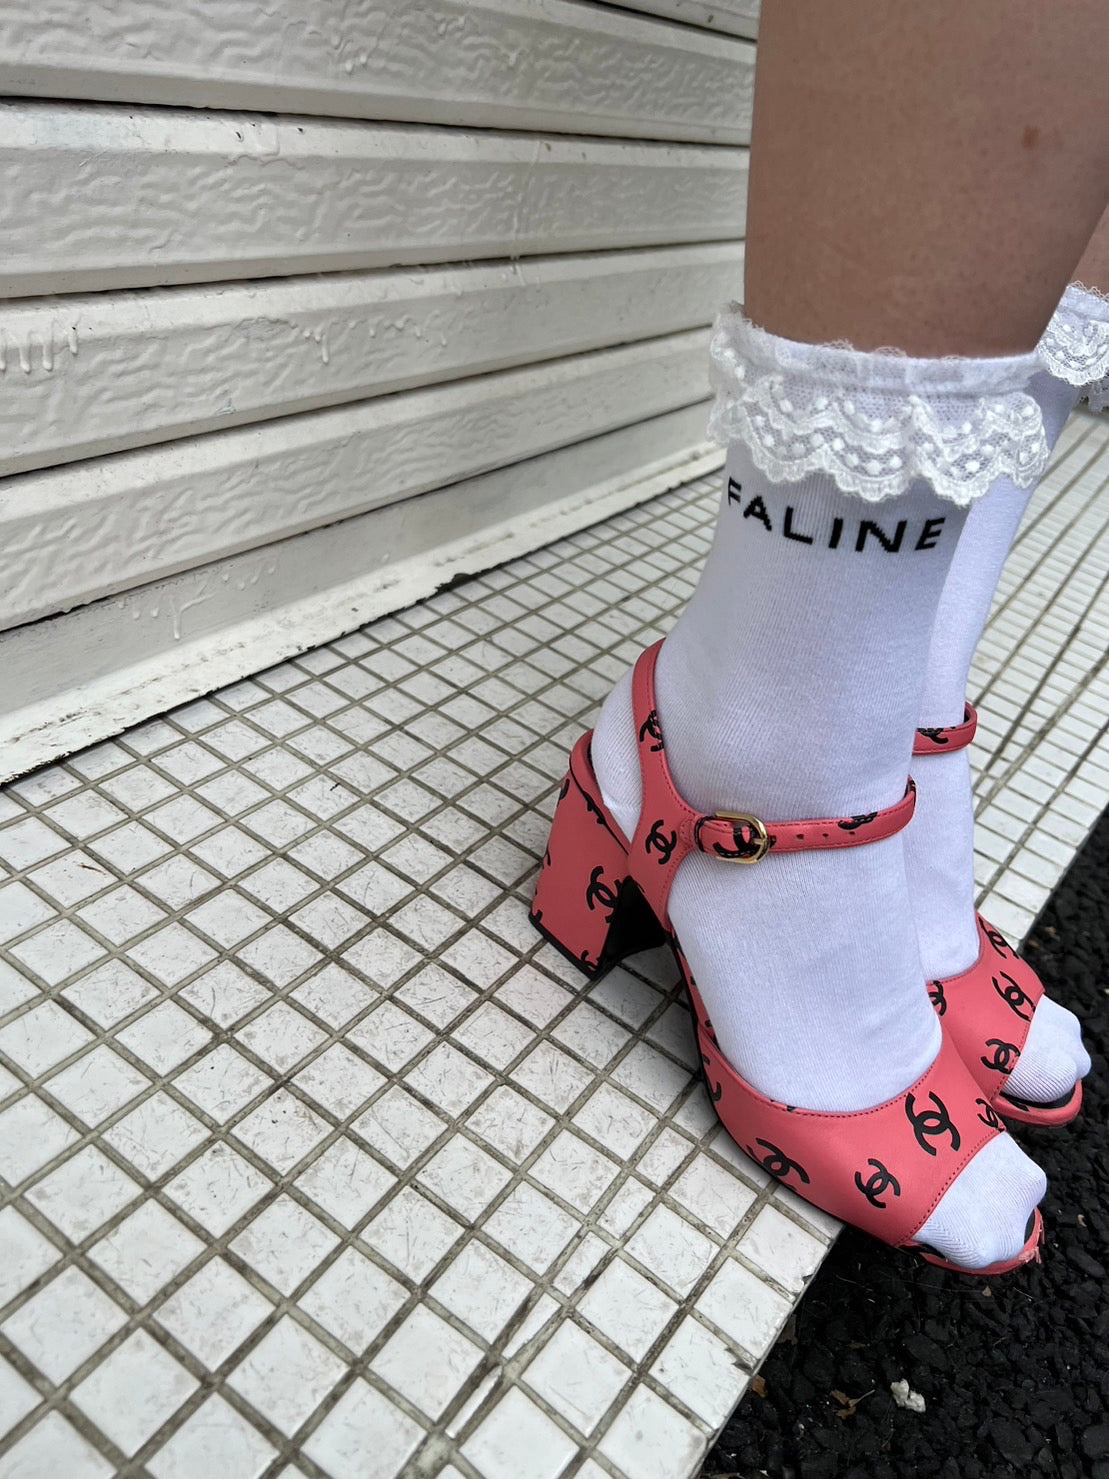 FALINE frill socks White